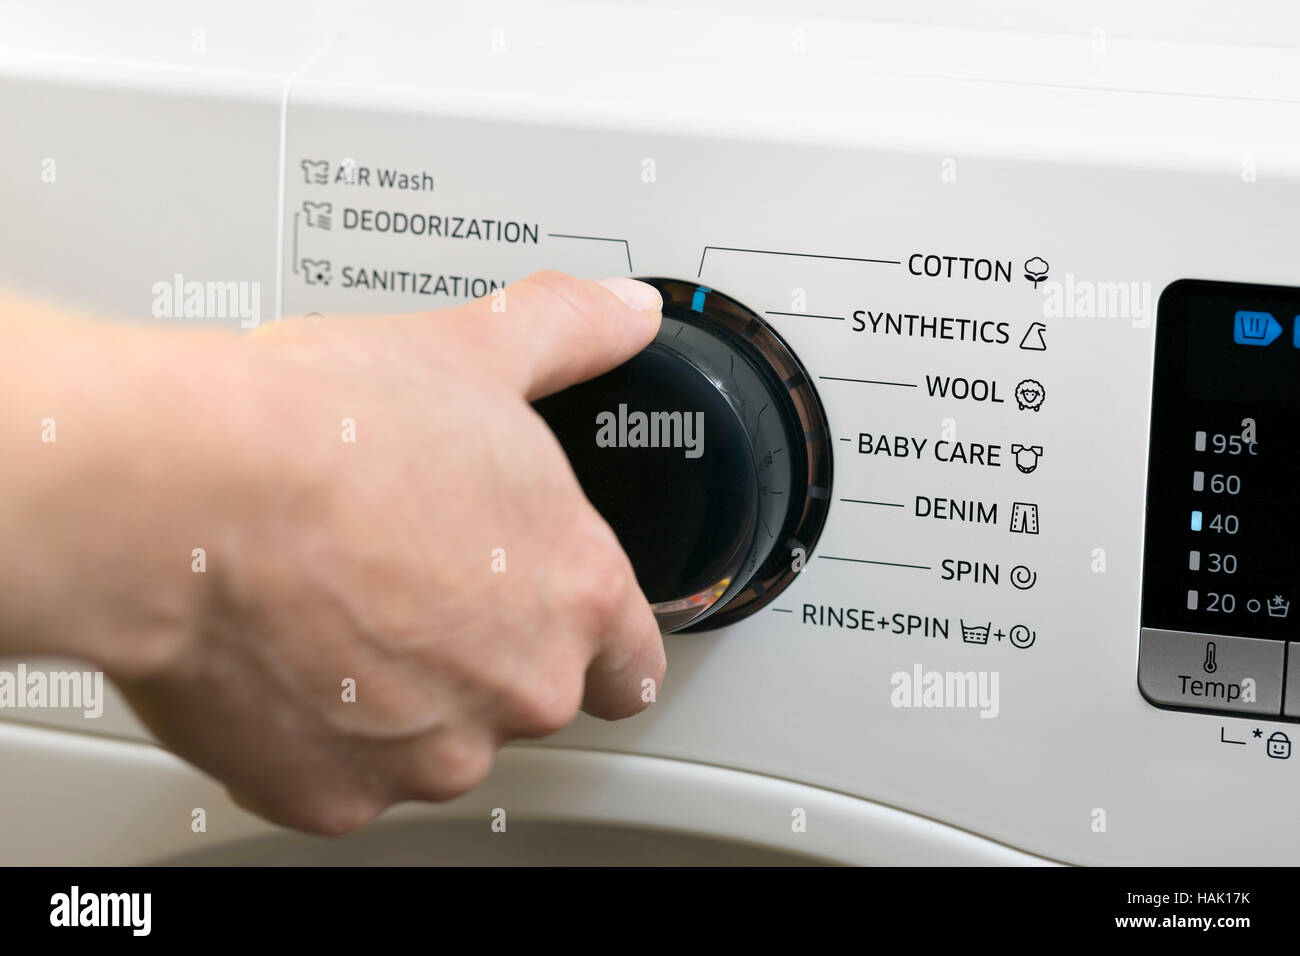 Waschtag - Waschmaschine-Programm einrichten Stockfoto